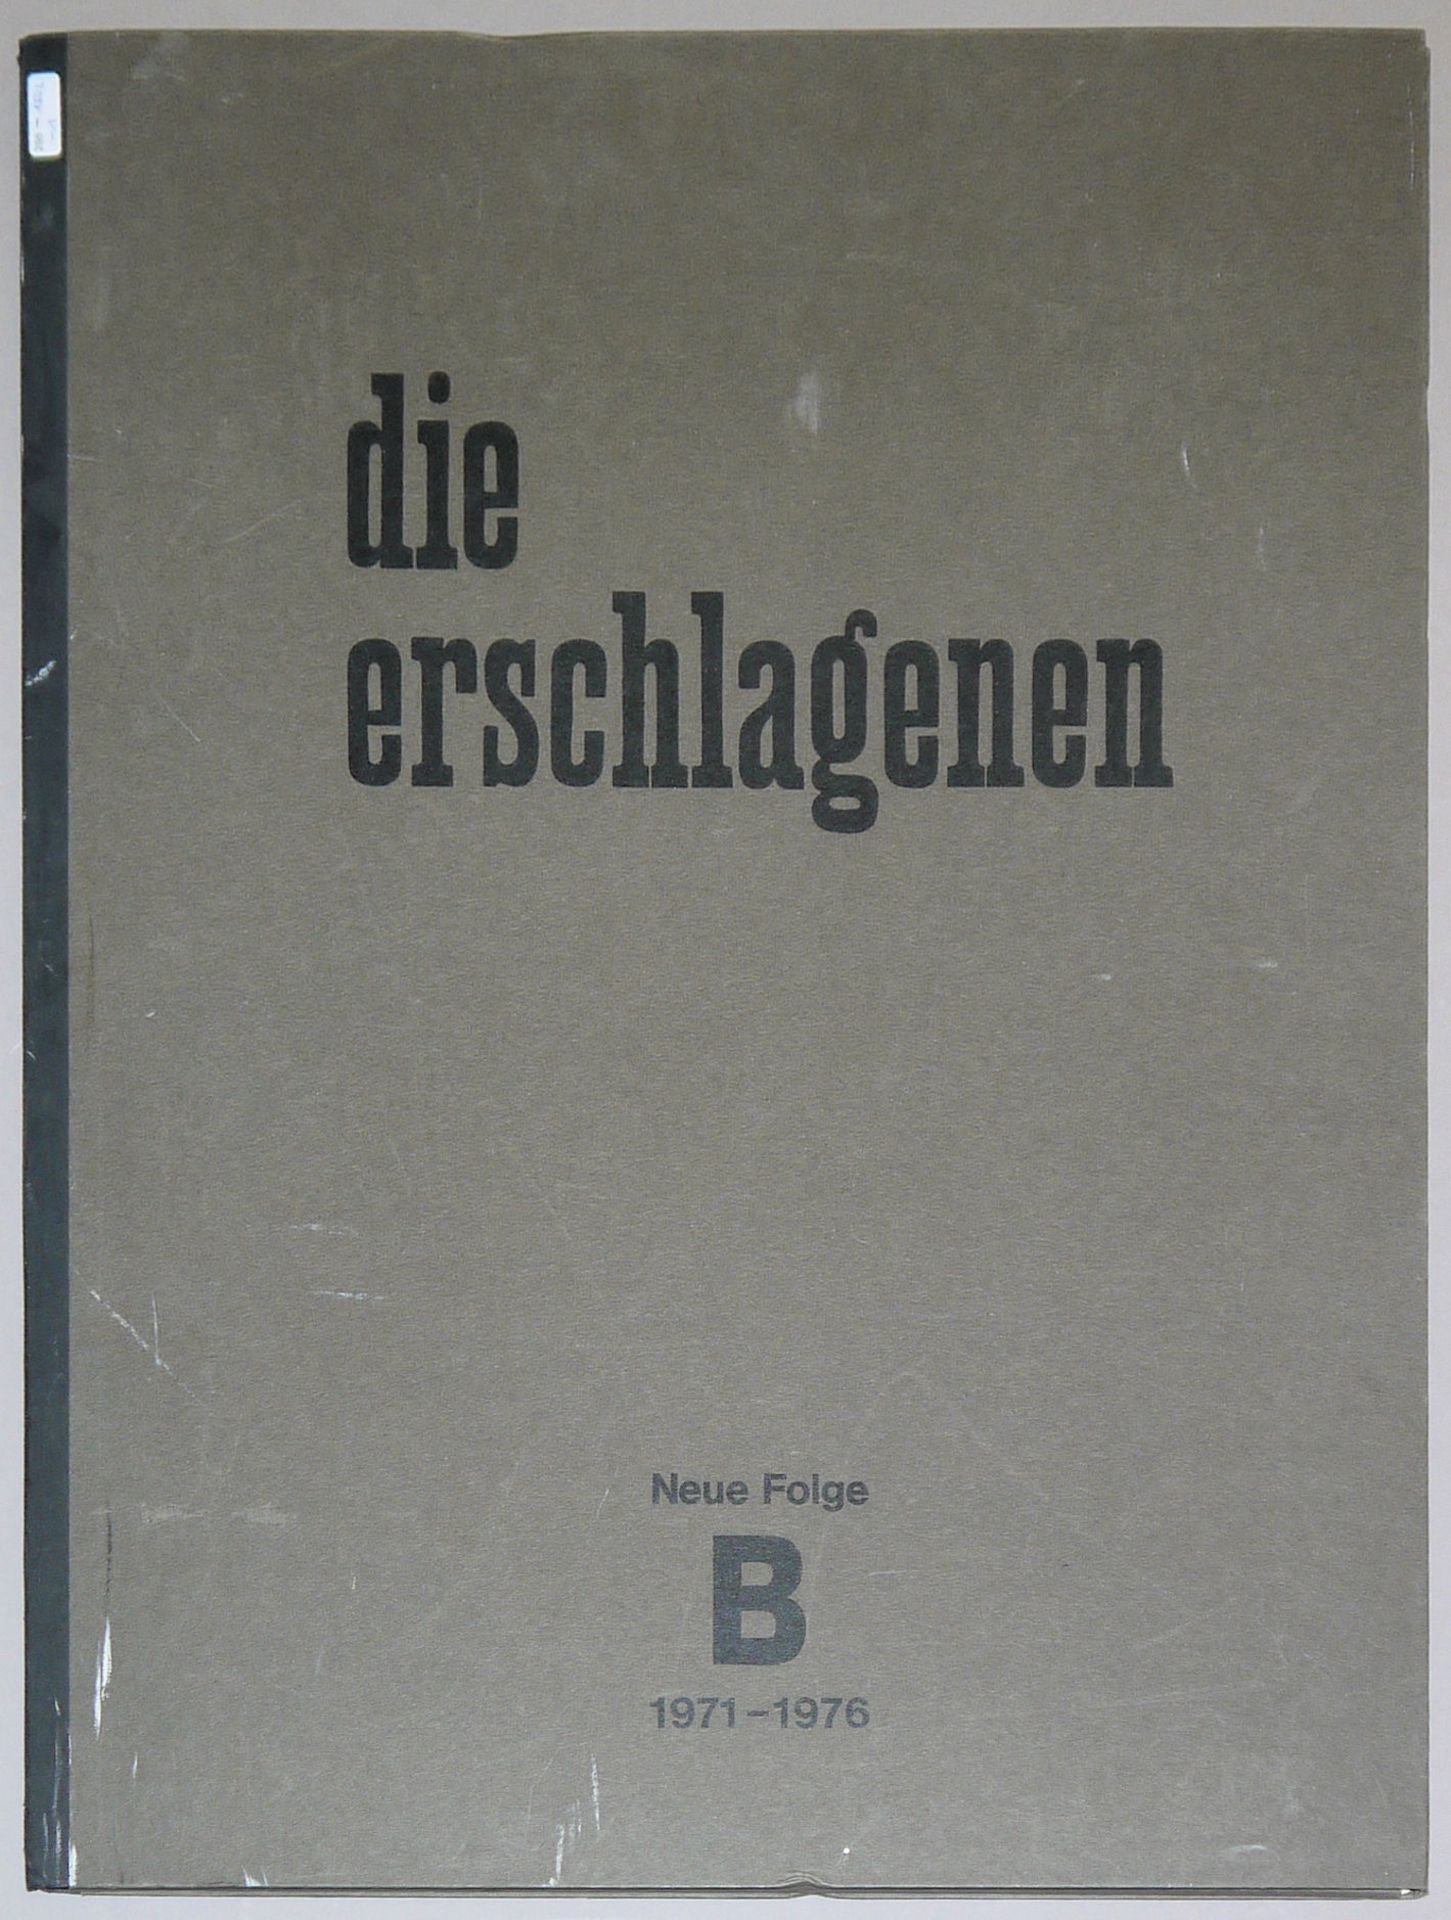 Gottfried Brockmann, "Die Erschlagenen", new series, portfolio with 19 compositions "nach Originals